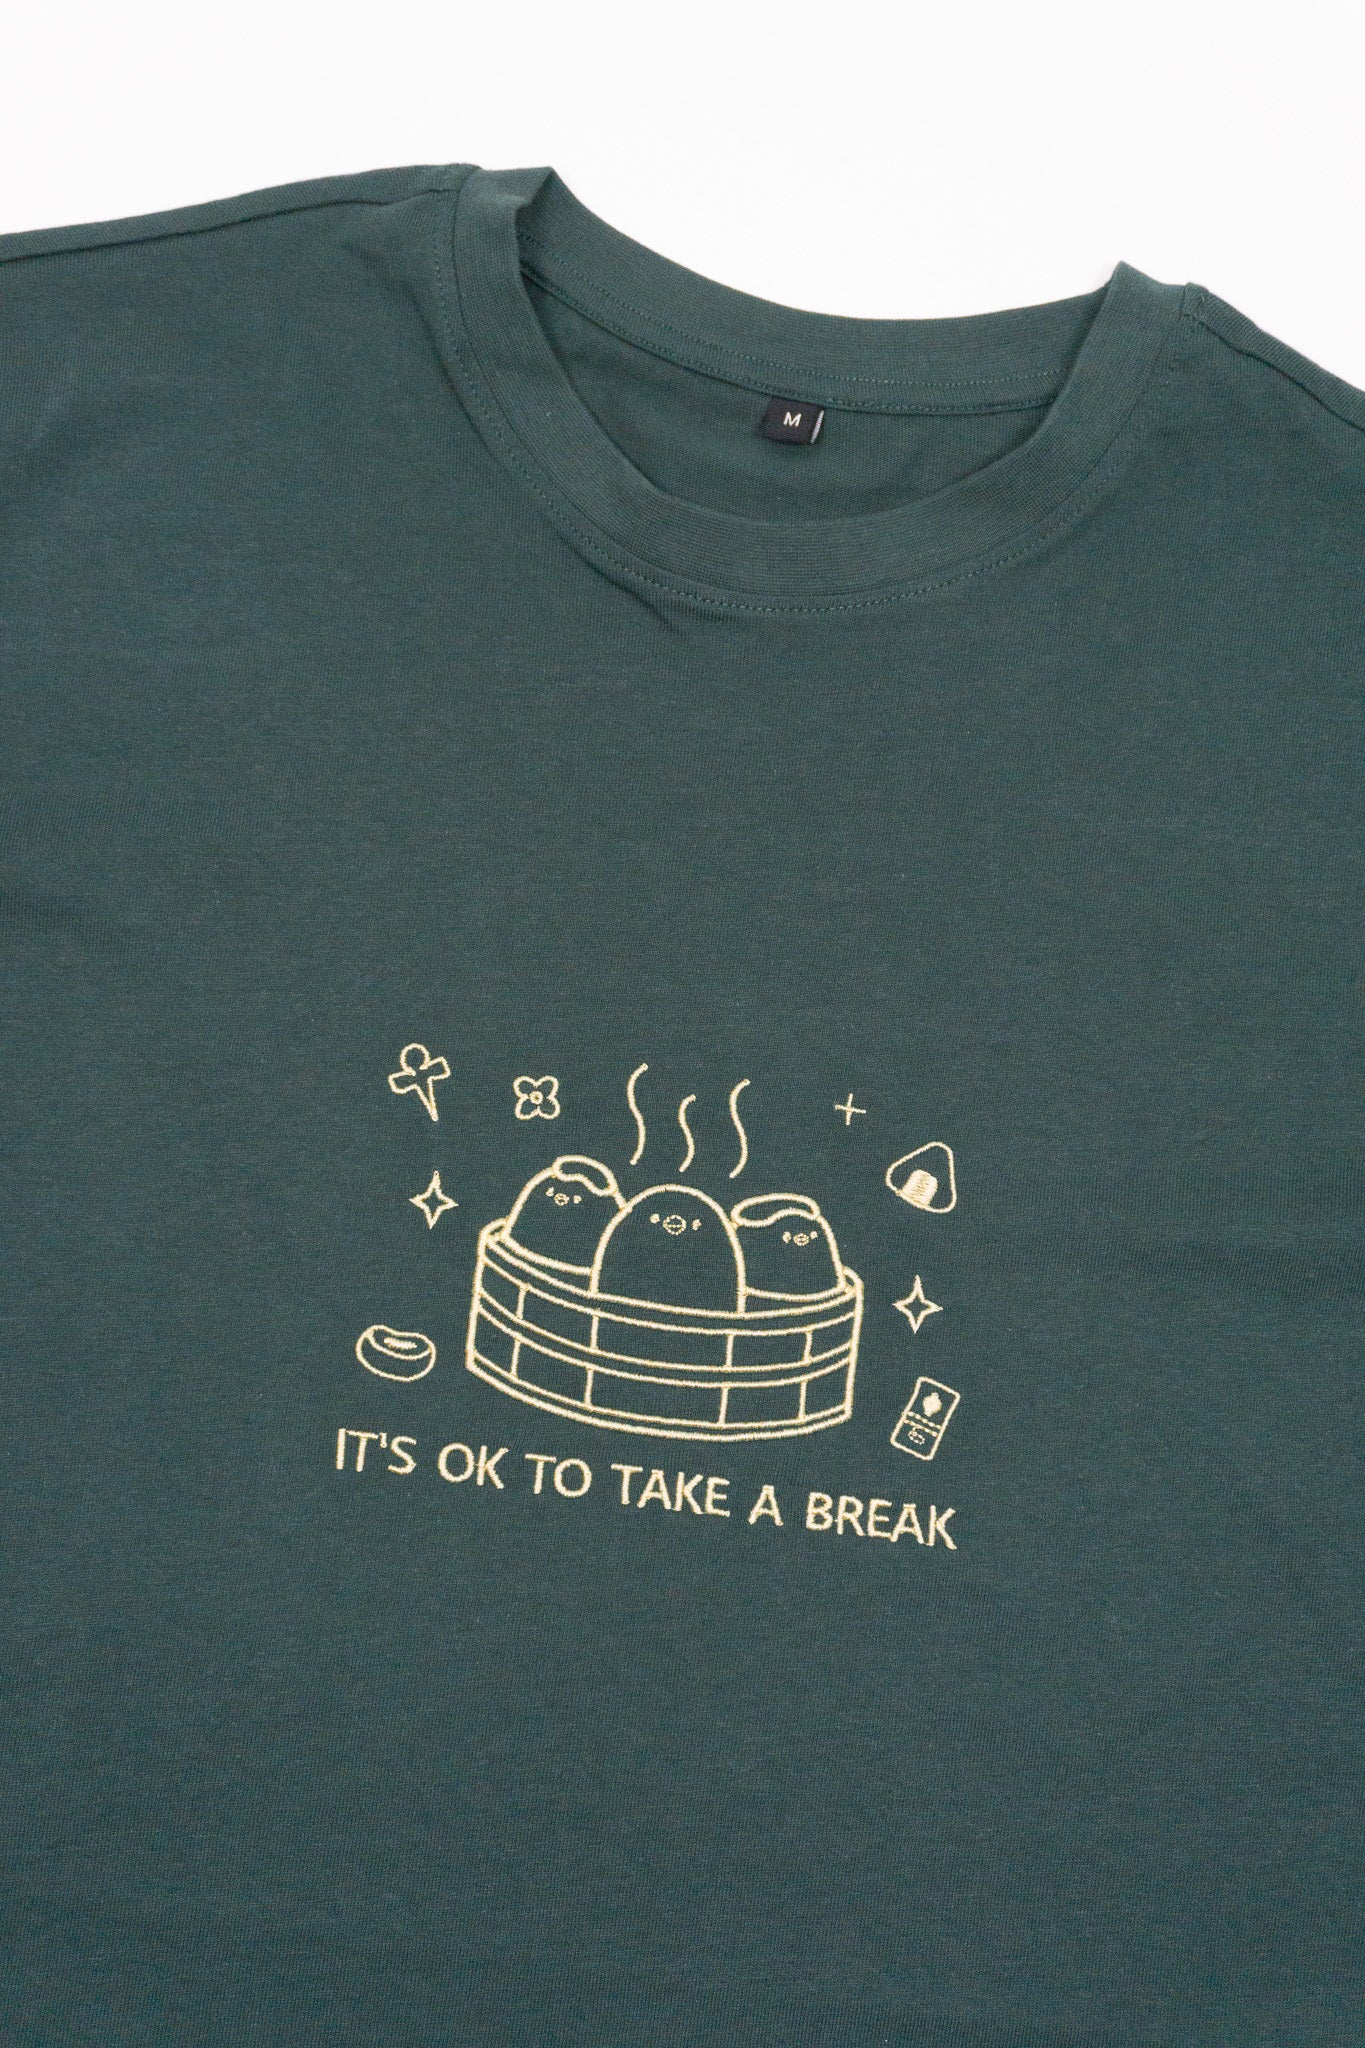 It's ok to take a break - T-Shirt